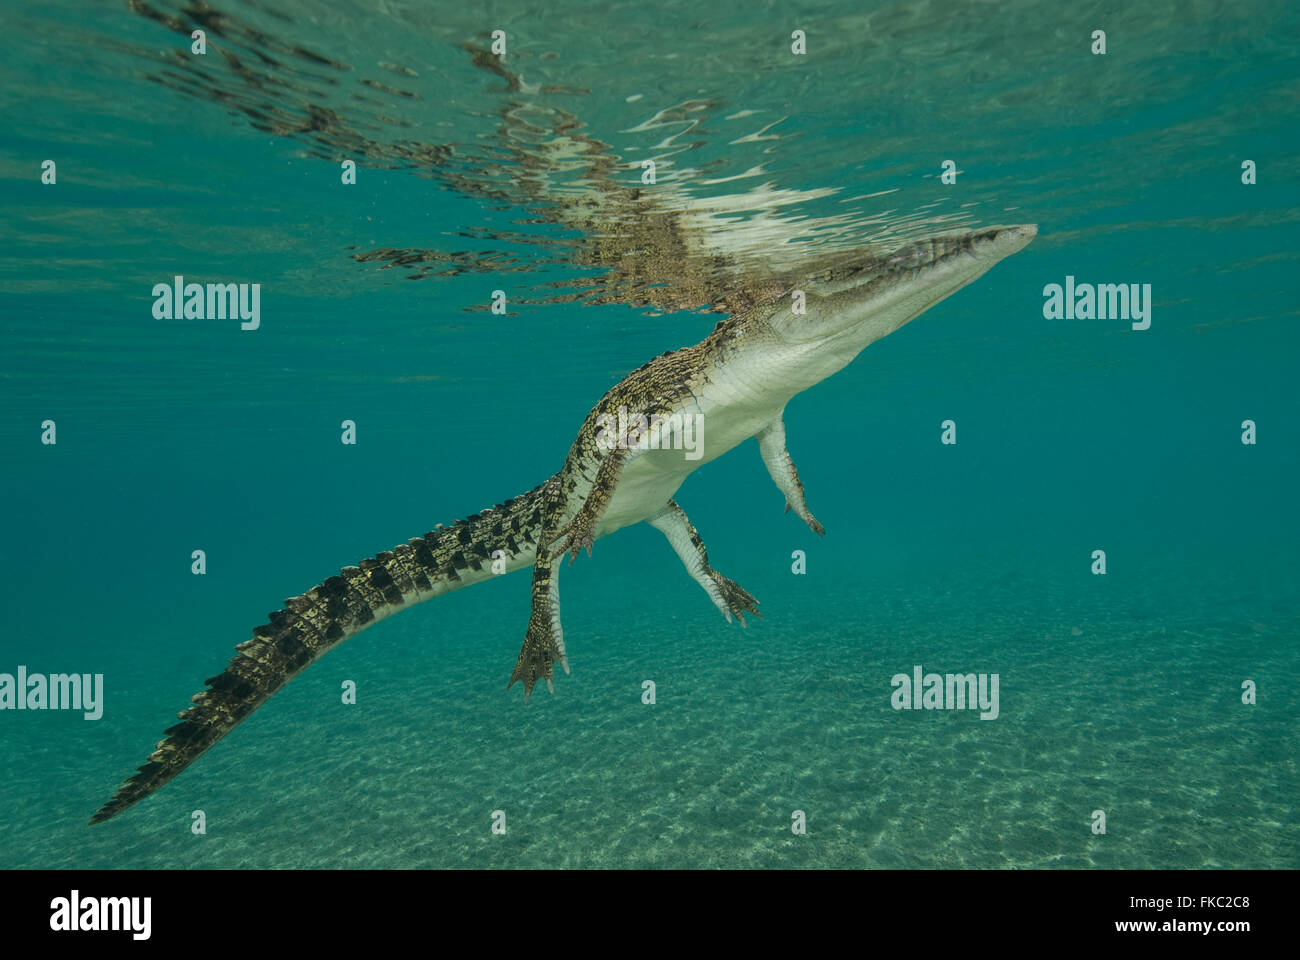 Salzwasser-Krokodil, Crocodylus Porosus ist die größte aller lebenden Krokodile und Reptilien. Es ist in geeigneten Lebensraum gefunden. Stockfoto